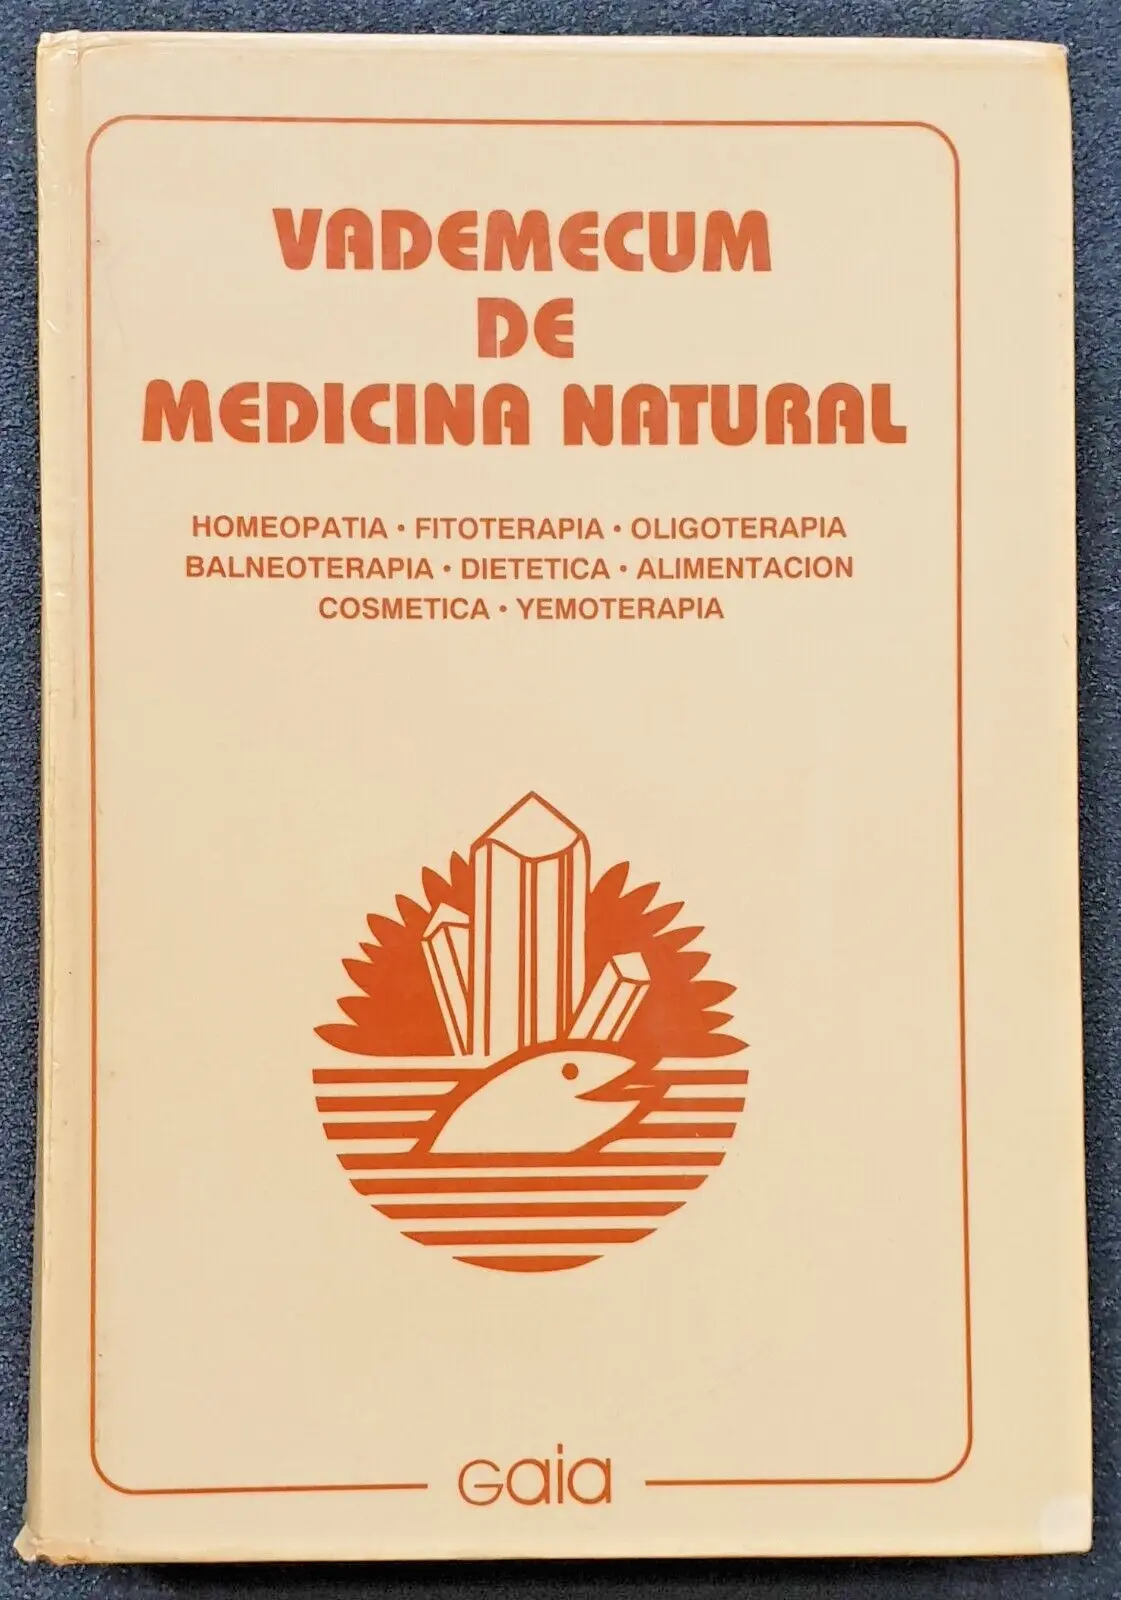 vademecum de medicina natural - Qué información puedo encontrar en el vademécum